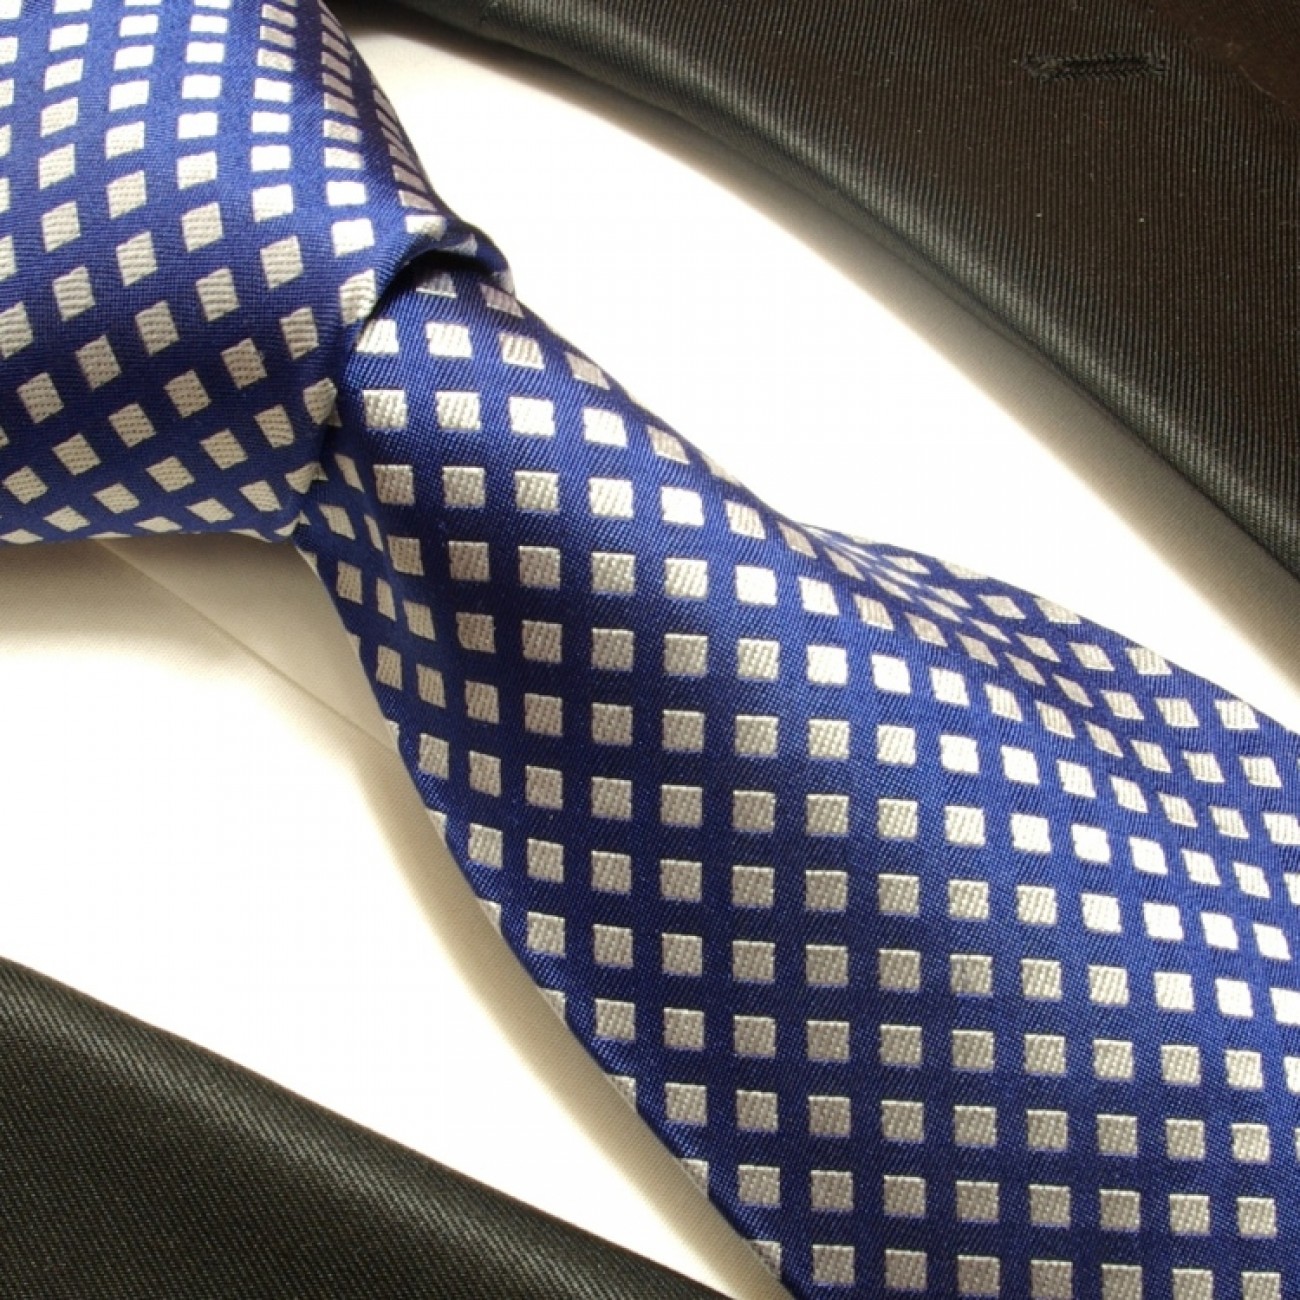 blue necktie